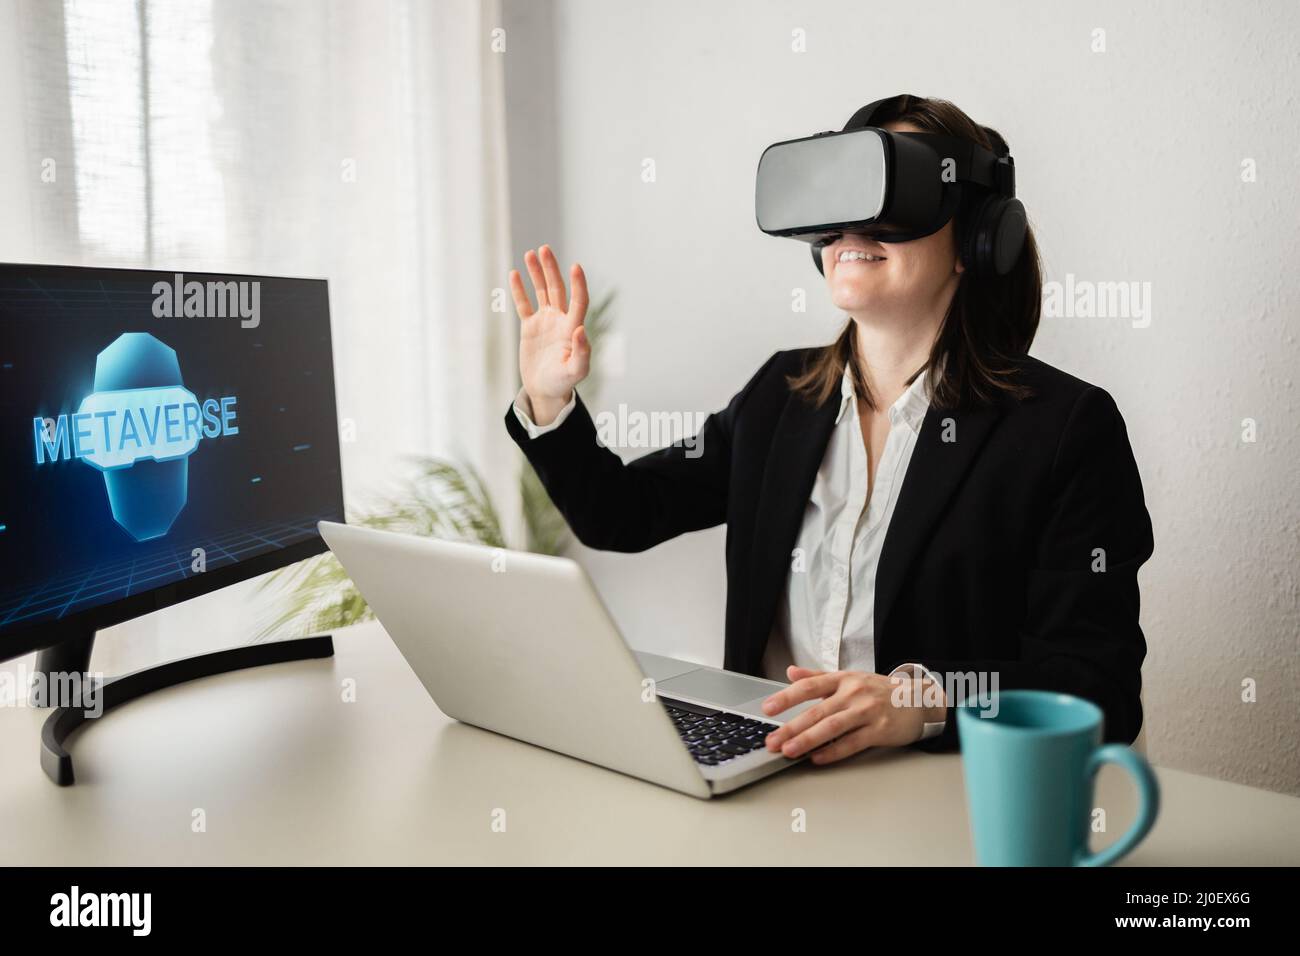 Concepto de tecnología Metaverse - Mujer de negocios que realiza videollamadas con auriculares de realidad virtual - Enfoque en las gafas Foto de stock